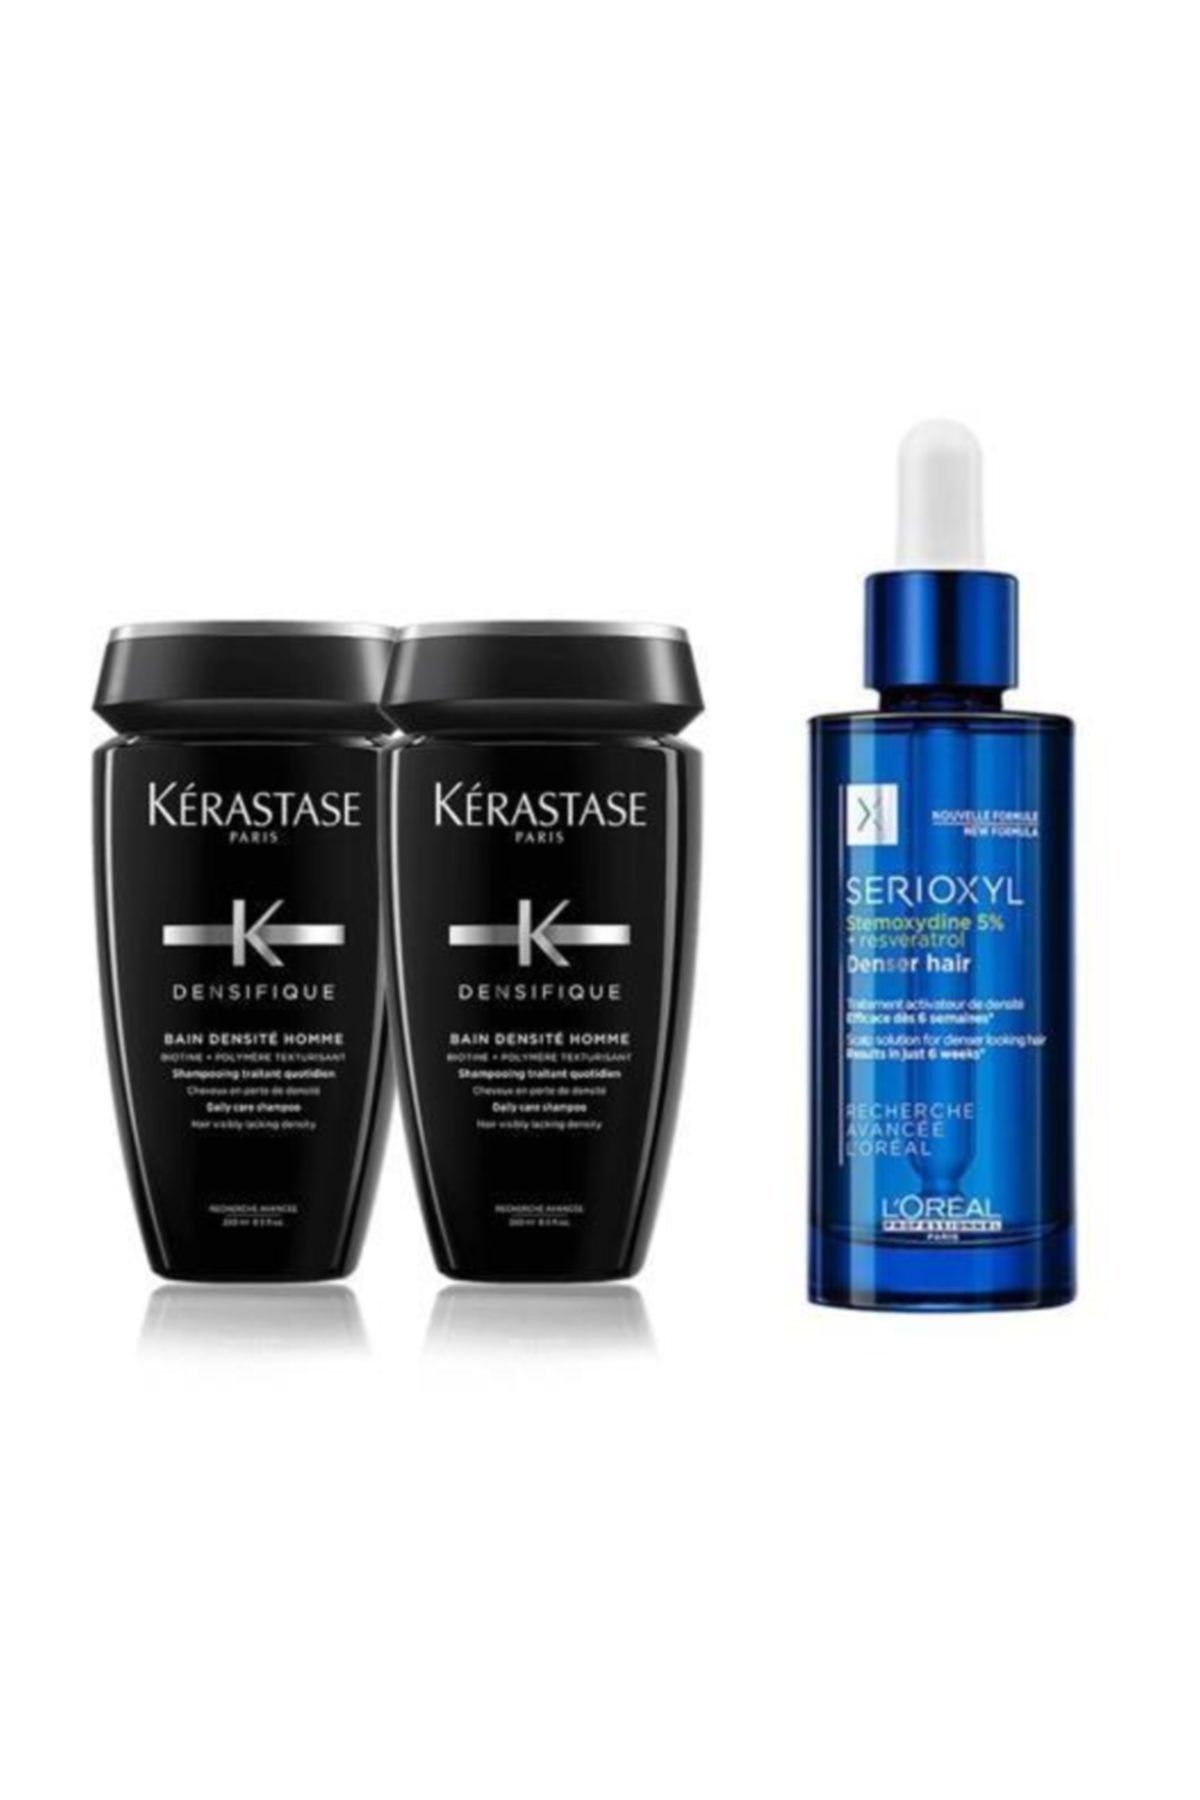 Kerastase Densifique Densite Erkek Şampuan 2x250 Ml+loreal Serioxyl Stemoxydine %5 Denser Hair 90 Ml